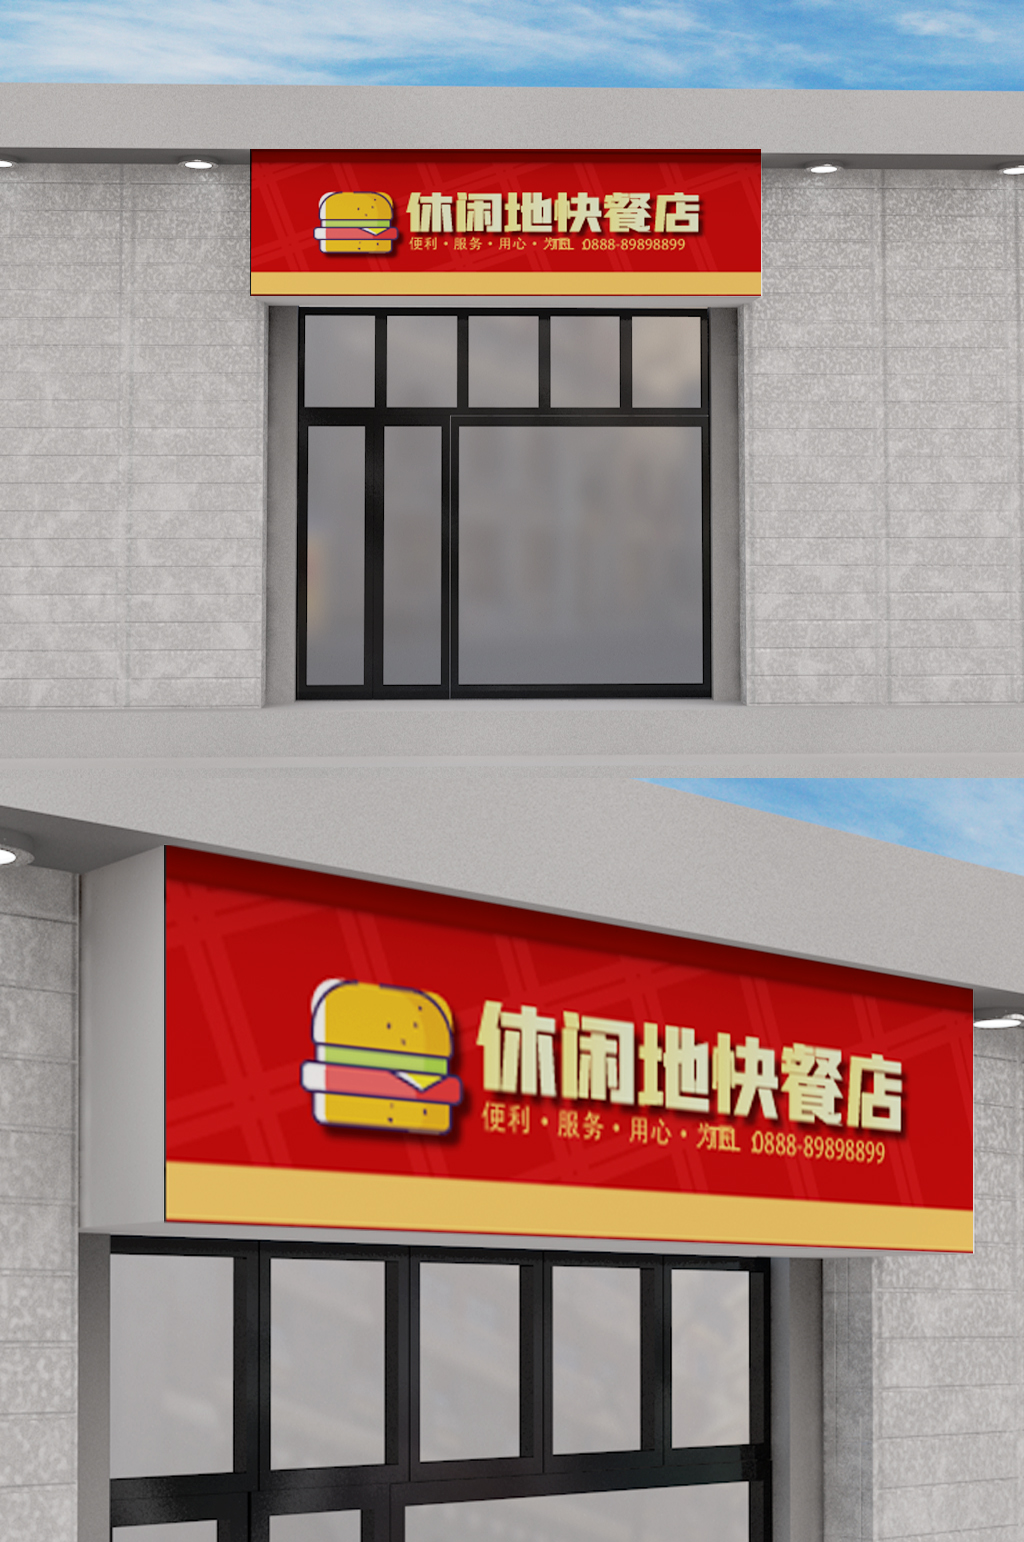 快餐店招牌门头设计立即下载快餐店门头餐馆门头黄色炸鸡汉堡店面门头